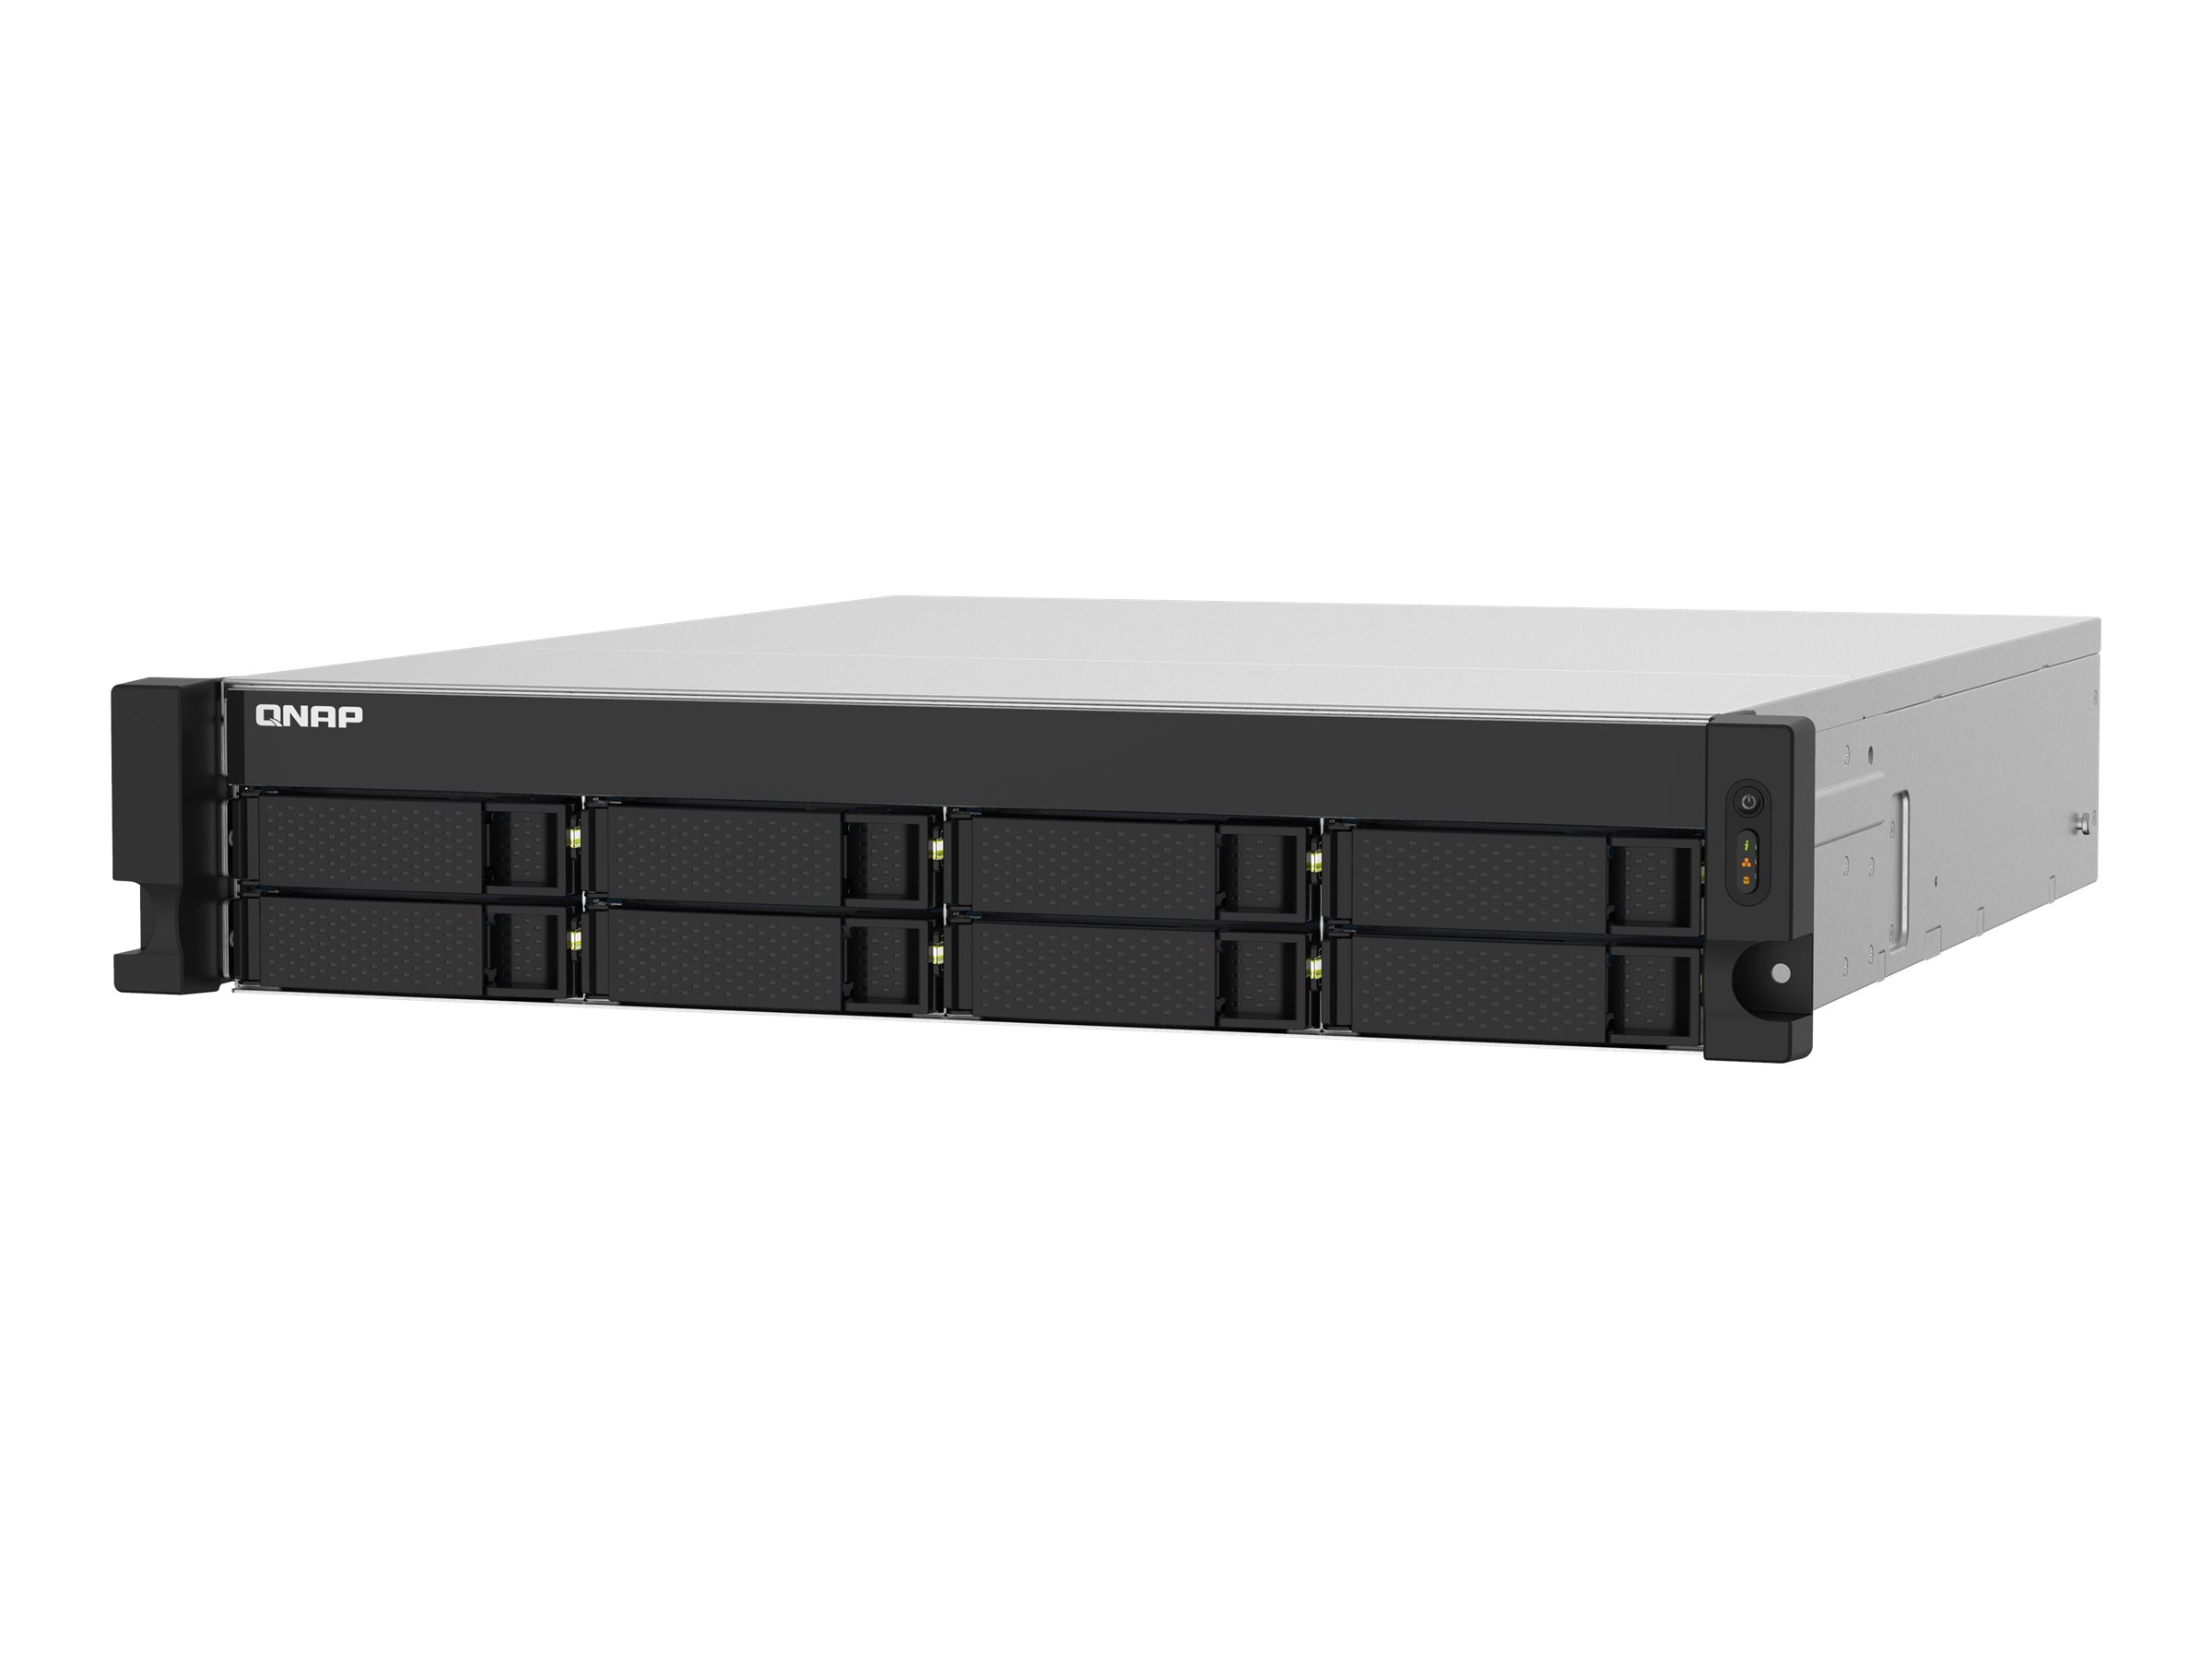 QNAP TS-832PXU - NAS-Server - 8 Schächte - Rack - einbaufähig - SATA 6Gb/s - RAID RAID 0, 1, 5, 6, 10, 50, JBOD, 60 - RAM 4 GB - Gigabit Ethernet / 2.5 Gigabit Ethernet / 10 Gigabit Ethernet - iSCSI Support - 2U